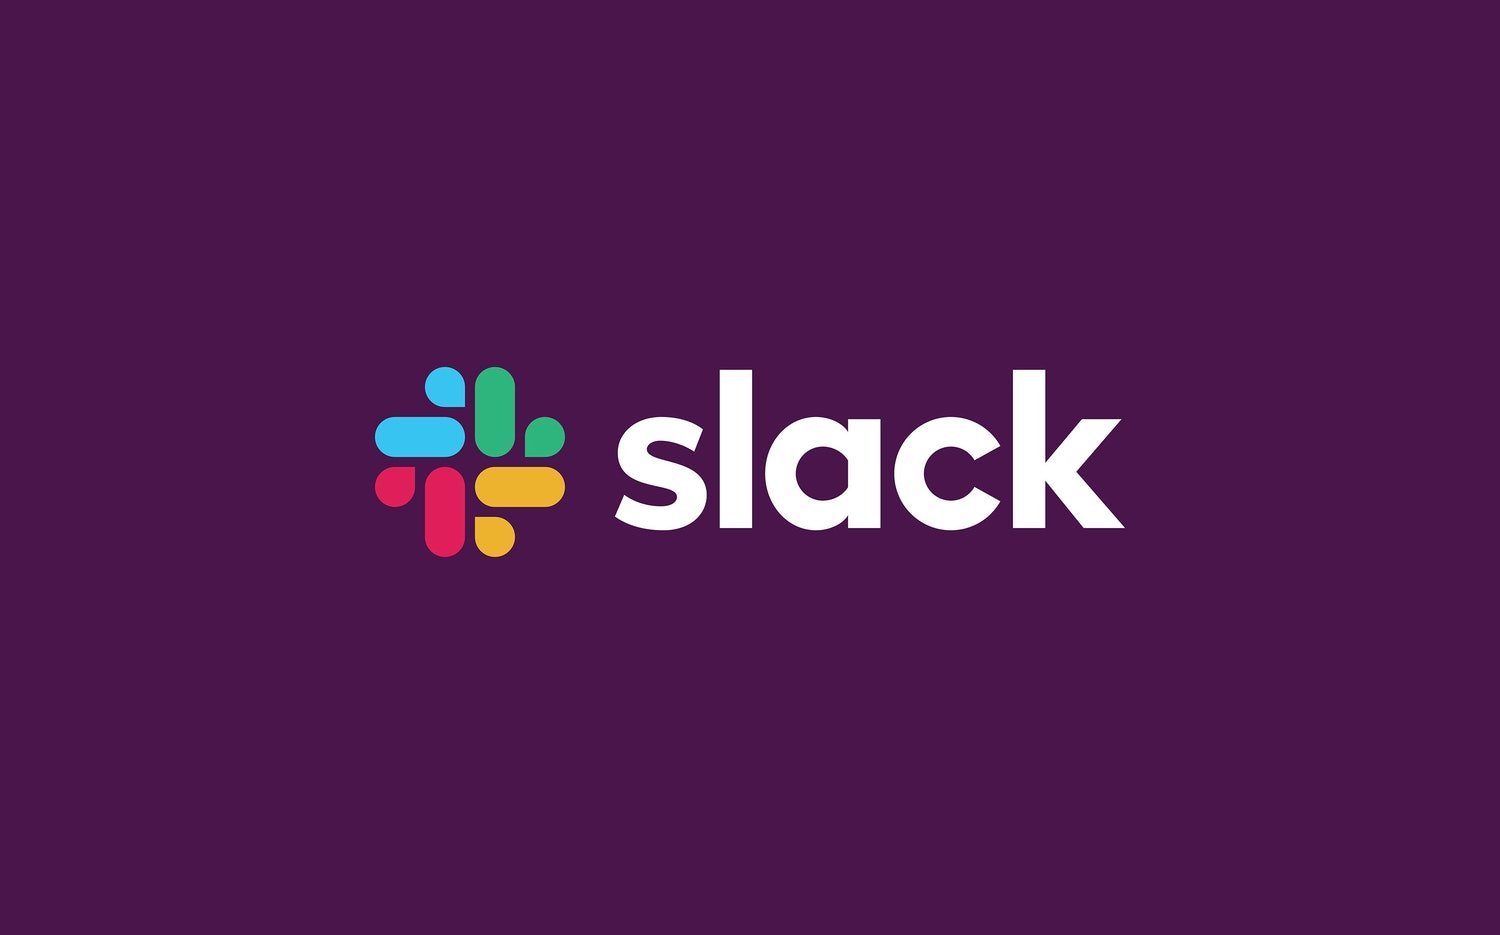 O Slack está avaliado em US$ 24 bilhões atualmente